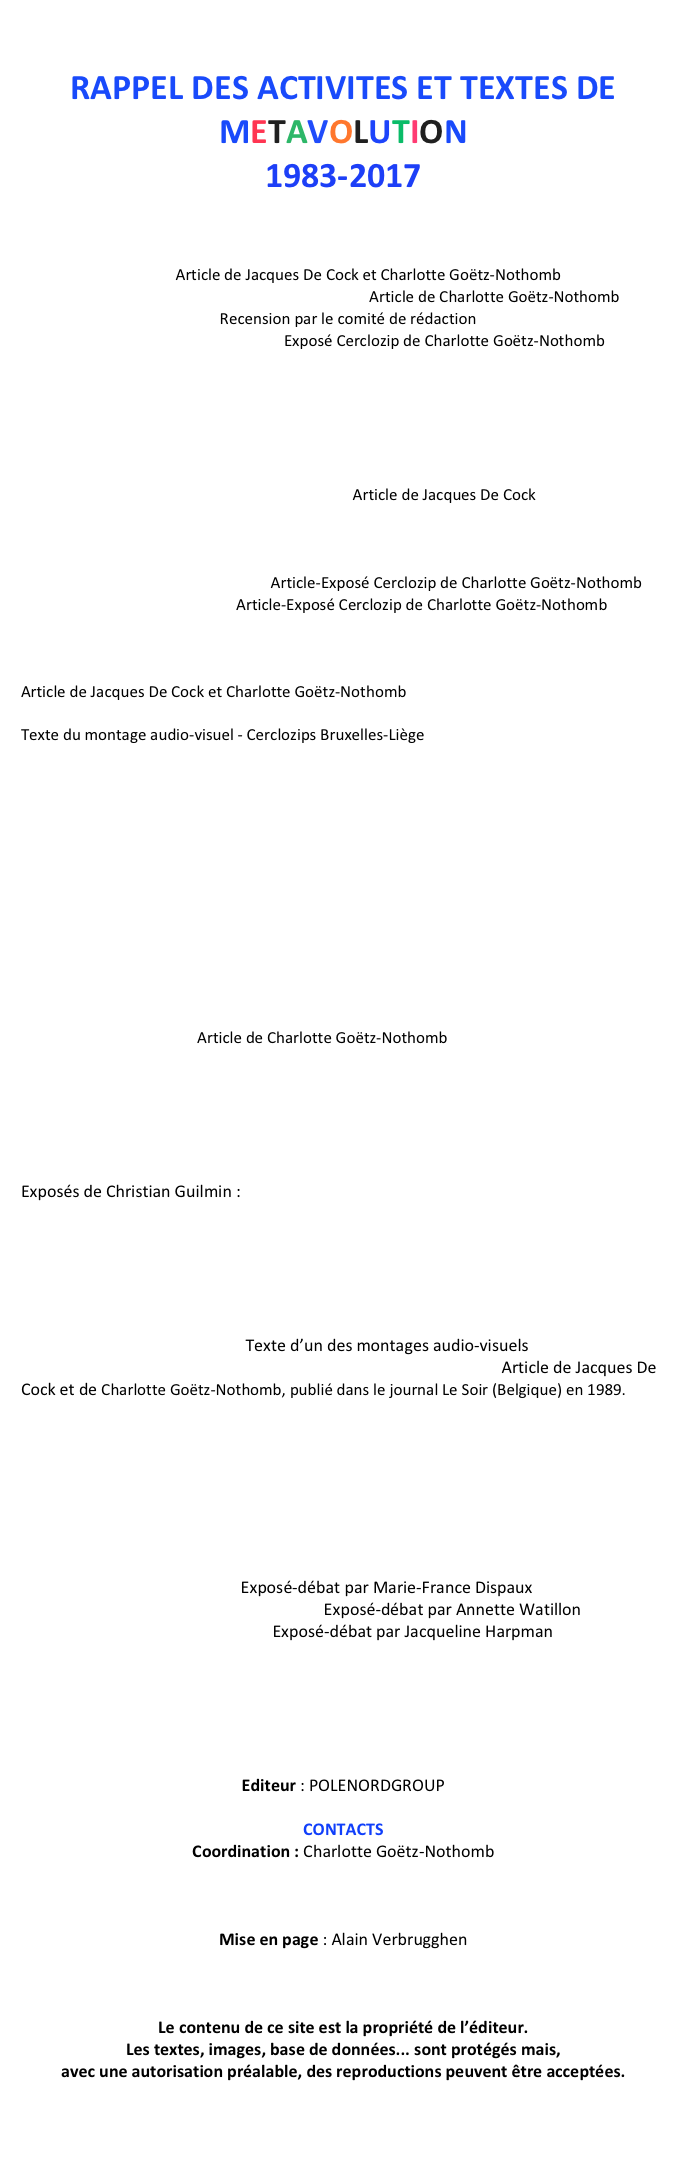 
RAPPEL DES ACTIVITES ET TEXTES DE METAVOLUTION
1983-2017
LE MYTHE DE FAUST
Introduction
Exposition – Animations publiques
«Le mythe de Faust» Article de Jacques De Cock et Charlotte Goëtz-Nothomb
«La merveilleuse histoire de l’histoire de Faust» Article de Charlotte Goëtz-Nothomb
«Faust encore et toujours» Recension par le comité de rédaction 
«La naissance du mythe, la magie»  Exposé Cerclozip de Charlotte Goëtz-Nothomb
Echos dans les médias – Remerciements

LIVRE Le Pacte avec l’Histoire – Essai contre le scepticisme moderne 
par Jacques De Cock et Charlotte Goëtz-Nothomb
Présentation
Résumé
«Quand nous aurons tout perdu, vive nous !» Article de Jacques De Cock
Echos dans les médias

GEORGE ORWELL - INTRODUCTION
«La Ferme des Animaux et 1984»  Article-Exposé Cerclozip de Charlotte Goëtz-Nothomb
«La découverte du politique» Article-Exposé Cerclozip de Charlotte Goëtz-Nothomb

JEAN-SEBASTIEN BACH - ANIMATIONS
«Jean-Sébastien Bach ou le tempérament inégal»    
Article de Jacques De Cock et Charlotte Goëtz-Nothomb
«Jean-Sébastien Bach, l’élaboration du mouvement» 
Texte du montage audio-visuel - Cerclozips Bruxelles-Liège 
Travaux de Claude Charlier:  Collection de revues «Bach en couleurs»
Echos dans les medias :
 - Exposition «Jean-Sébastien-Bach, à l’origine de l’art moderne»
 - Hommage à Marcel Druart
 - SOIREES-DEBATS : 
* par Walter Corten : «La réémergence de Bach au XIXe siècle et sa perception dans le romantisme»
* par Bernard Foccroulle : «Les interprétations de l’œuvre de Bach au XXe siècle» 
* par William Hekkers : «The Baroque Sixties»

LE HEROS MODERNE - TITRES
Présentation - Journal - Remerciements 
Animations publiques : Exposition - Spectacles - Débats - Cerclozips
«Les Héros modernes»   Article de Charlotte Goëtz-Nothomb
«Le Journal du Héros moderne» Editorial de Jacques De Cock
Dissertation d’une étudiante, Amandine Pirnay 
Echos dans les médias

L’EGYPTE ANCIENNE
Introduction
Exposés de Christian Guilmin : 
« Les Mystères du masque de Tout ankh Amon des origines à nos jours » 
« Toute l’histoire de l’Egypte ancienne sur base des scarabées gravés »
« Le fabuleux destin des obélisques égyptiens »

LA REVOLUTION FRANÇAISE
Présentation et animations publiques
« La Révolution est terminée»  Texte d’un des montages audio-visuels
« La Trop belle pour eux! Les historiens ont trompé la Révolution» Article de Jacques De Cock et de Charlotte Goëtz-Nothomb, publié dans le journal Le Soir (Belgique) en 1989.
Animations sur Jean-Paul Marat
Echos dans les médias sur toutes les activités de l’asbl POLE NORD concernant la Révolution française à l’occasion de son Bicentenaire: expositions, spectacle, montages audio-visuels, publications, causeries…

DE VIENNE LA PSYCHANALYSE - TITRES
Présentation
Activités publiques
«Mais dites-moi que je rêve!» Exposé-débat par Marie-France Dispaux
«A propos de la psychanalyse appliquée» Exposé-débat par Annette Watillon
«Tracés d’Œdipe à notre univers»  Exposé-débat par Jacqueline Harpman
Echos dans les médias

LES REUNIONS CERCLOZIPS – TITRES

PUBLICATIONS (BROCHURES-LIVRES)
 Editeur : POLENORDGROUP

CONTACTS 
Coordination : Charlotte Goëtz-Nothomb

charlotte.goetznothomb@gmail.com
 
Mise en page : Alain Verbrugghen

cursus.av@gmail.com

Le contenu de ce site est la propriété de l’éditeur.
Les textes, images, base de données... sont protégés mais, 
avec une autorisation préalable, des reproductions peuvent être acceptées.


